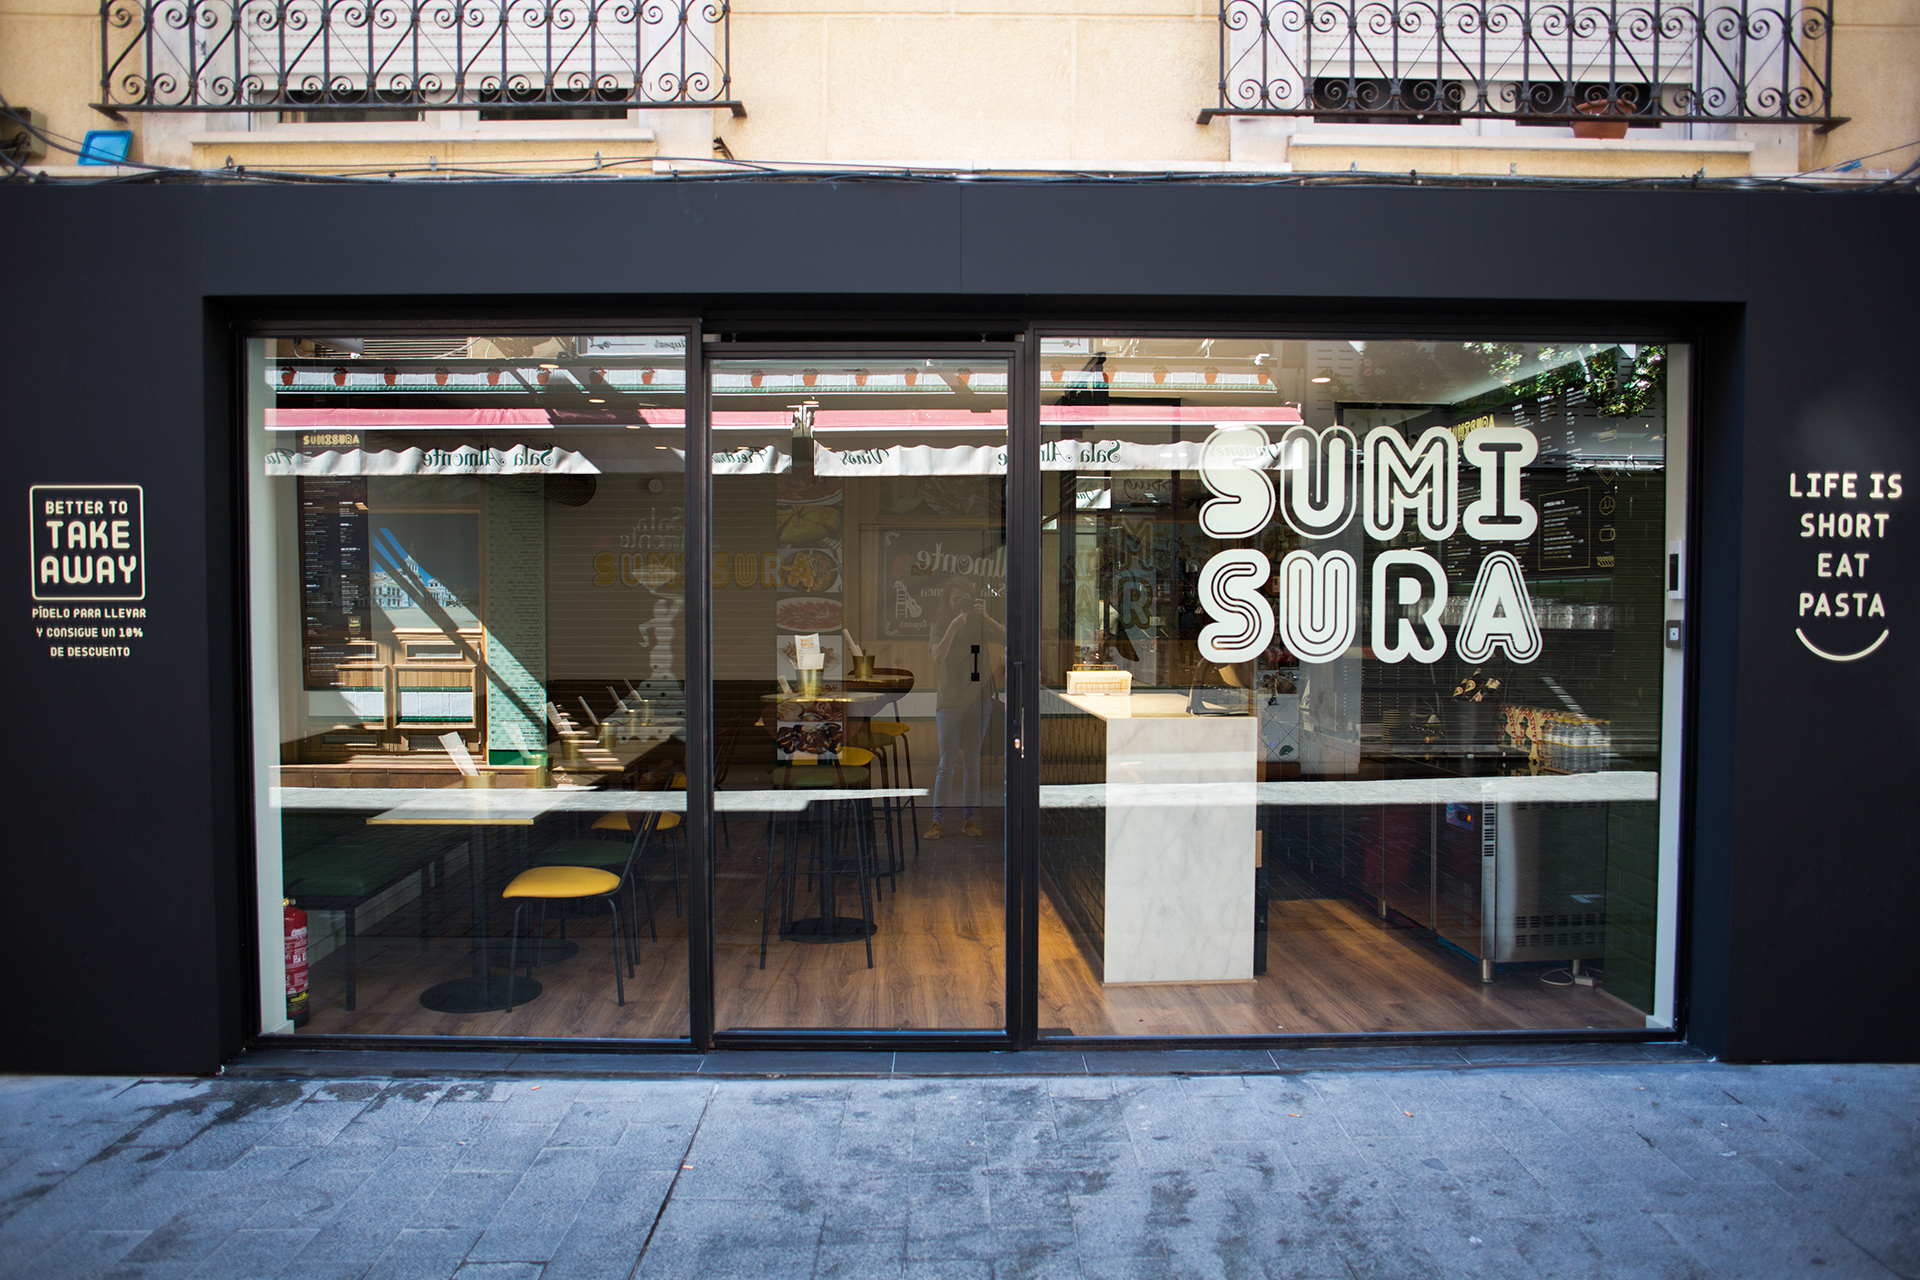 Diseño de identidad corporativa para un nuevo restaurante italiano que abre sus puertas en Alicante: un fast food con un concepto saludable y en el que se sirve pasta fresca recién hecha.